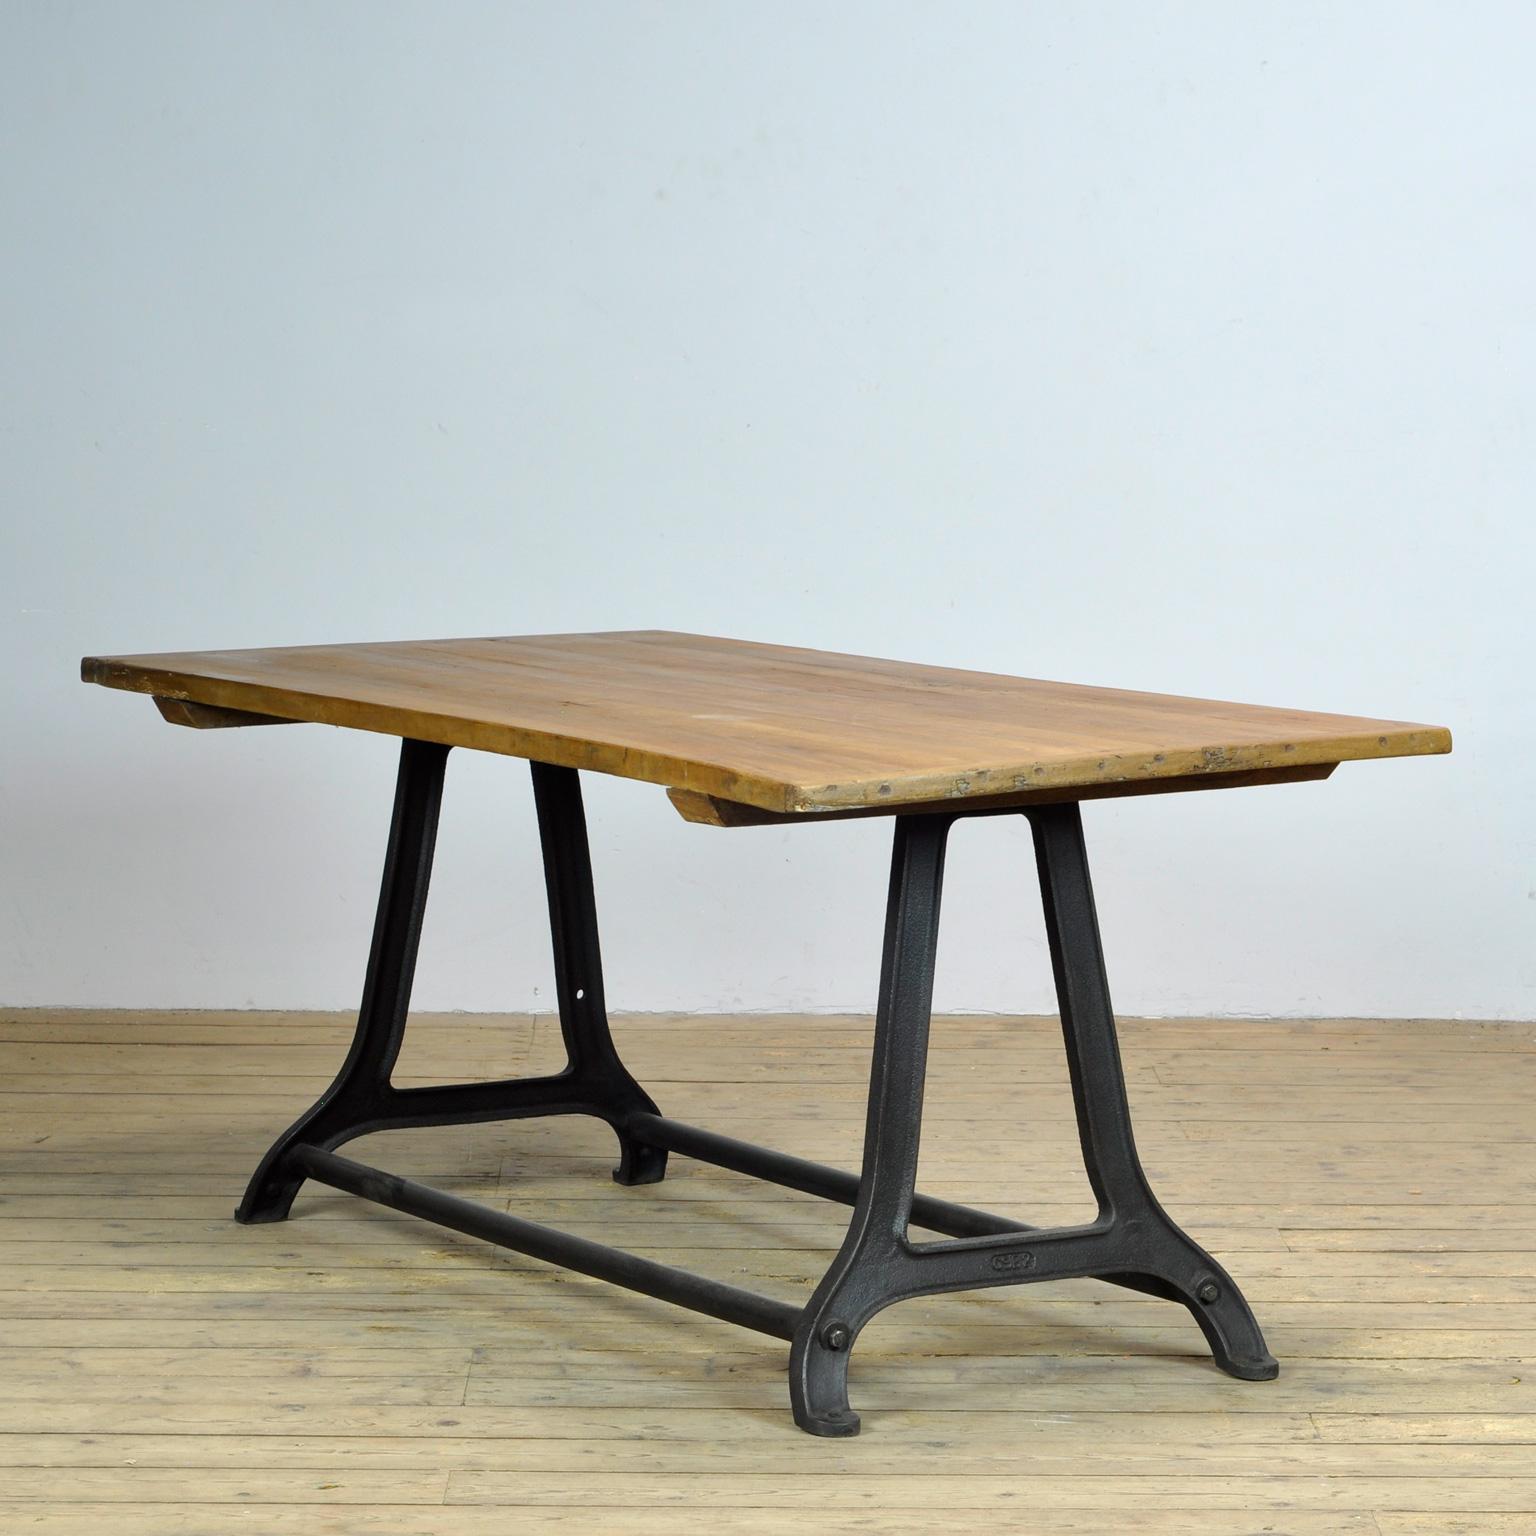 La table est fabriquée à partir d'une ancienne base de machine industrielle en fonte et d'un vieux plateau en pin.